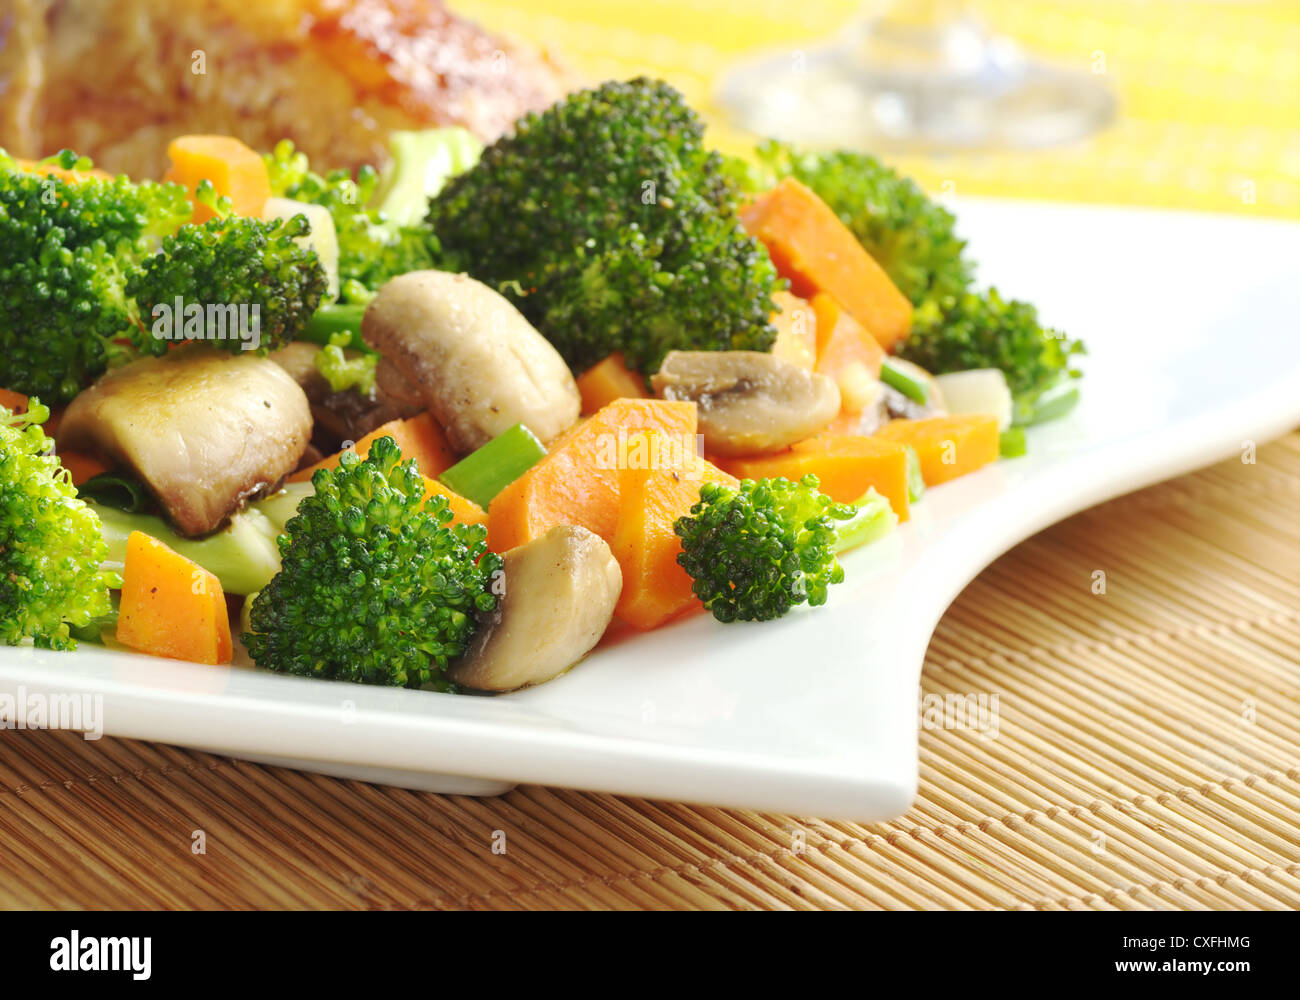 Verdure fritte (broccoli, i funghi, la carota, scalogno) sulla piastra bianca con carne di pollo e bicchiere di vino in background Foto Stock